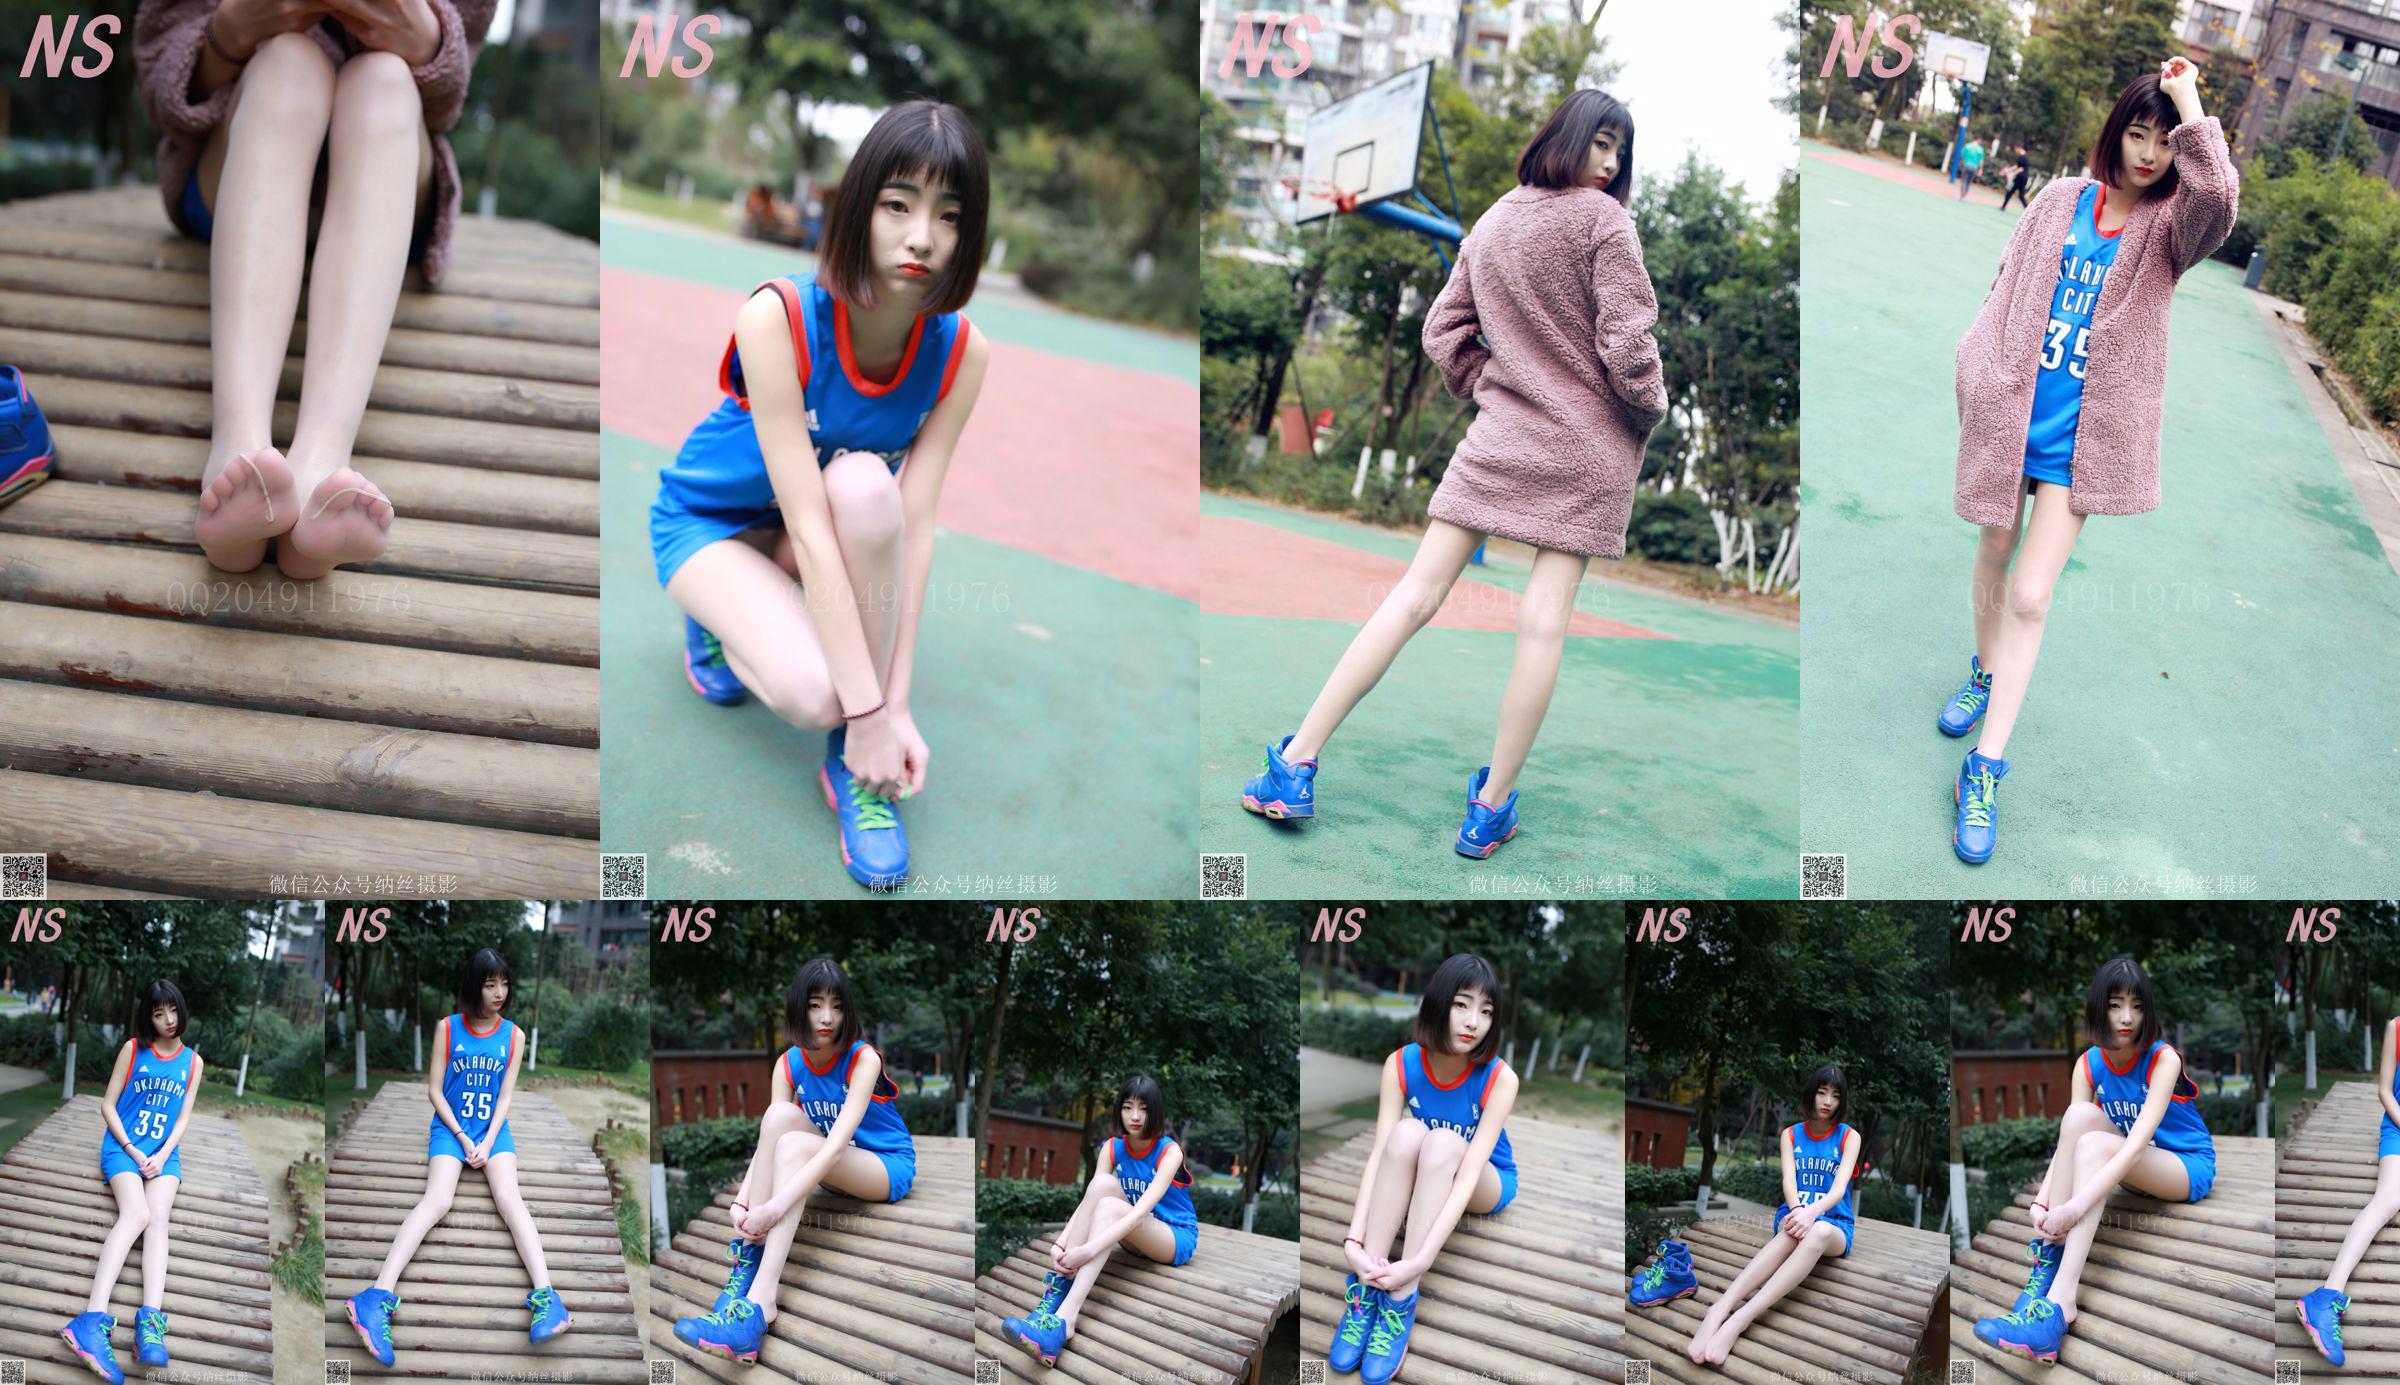 Chen Yujie "Basketball Girl" [Nasi Fotografie] NO.107 No.c5de71 Seite 1